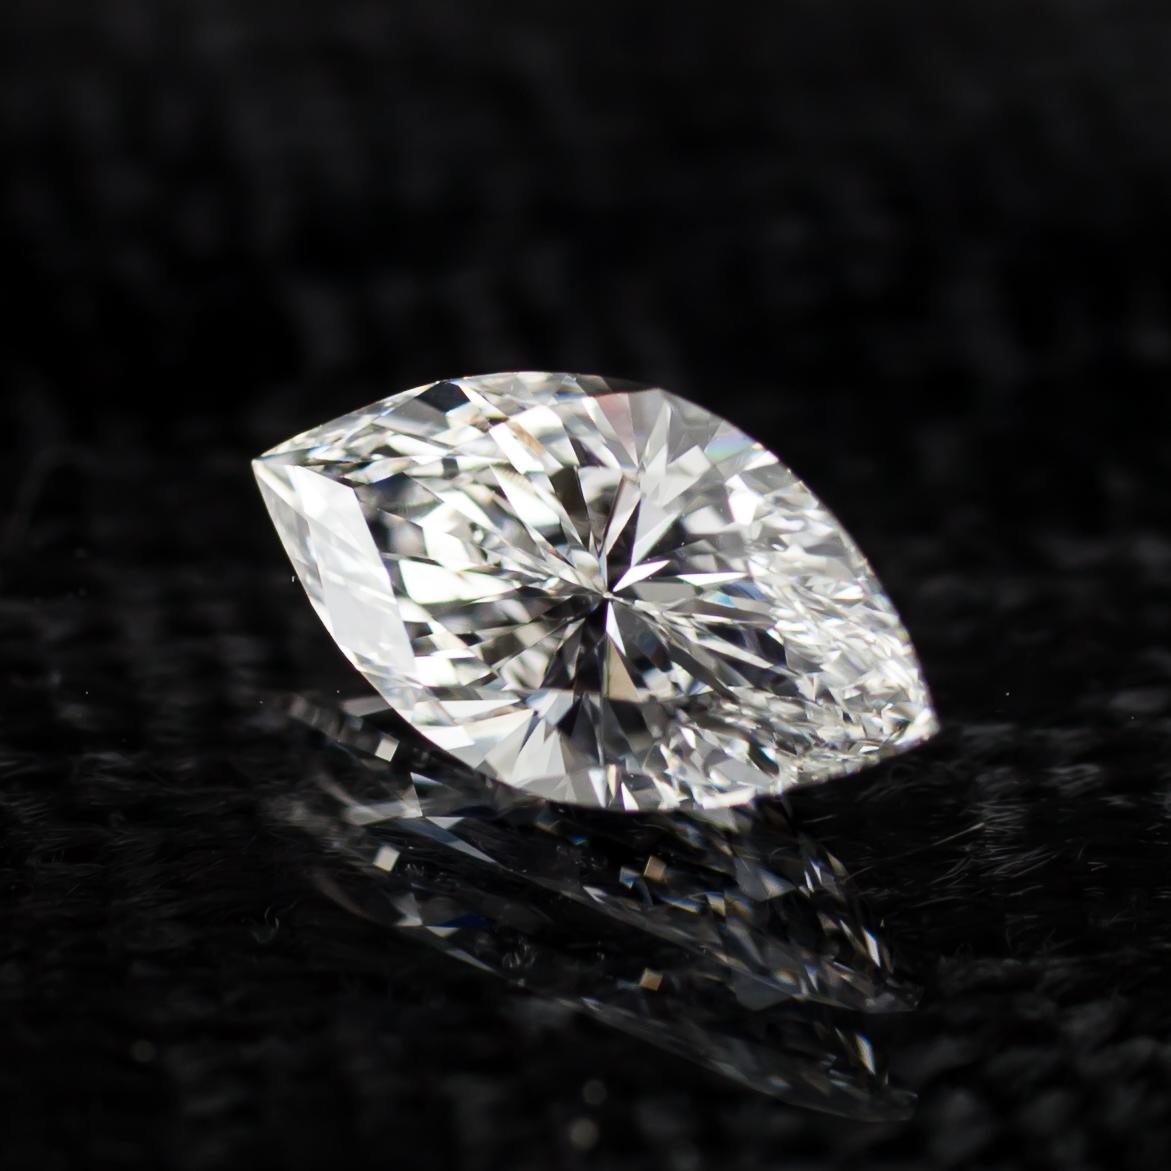 Informations générales sur le diamant
Taille du diamant : Brilliante Marquise
Dimensions : 10.17  x  5.32  -  3.74 mm

Résultats de la classification des diamants
Poids en carats : 1,08
Grade de couleur : F
Grade de clarté : VS2

Informations